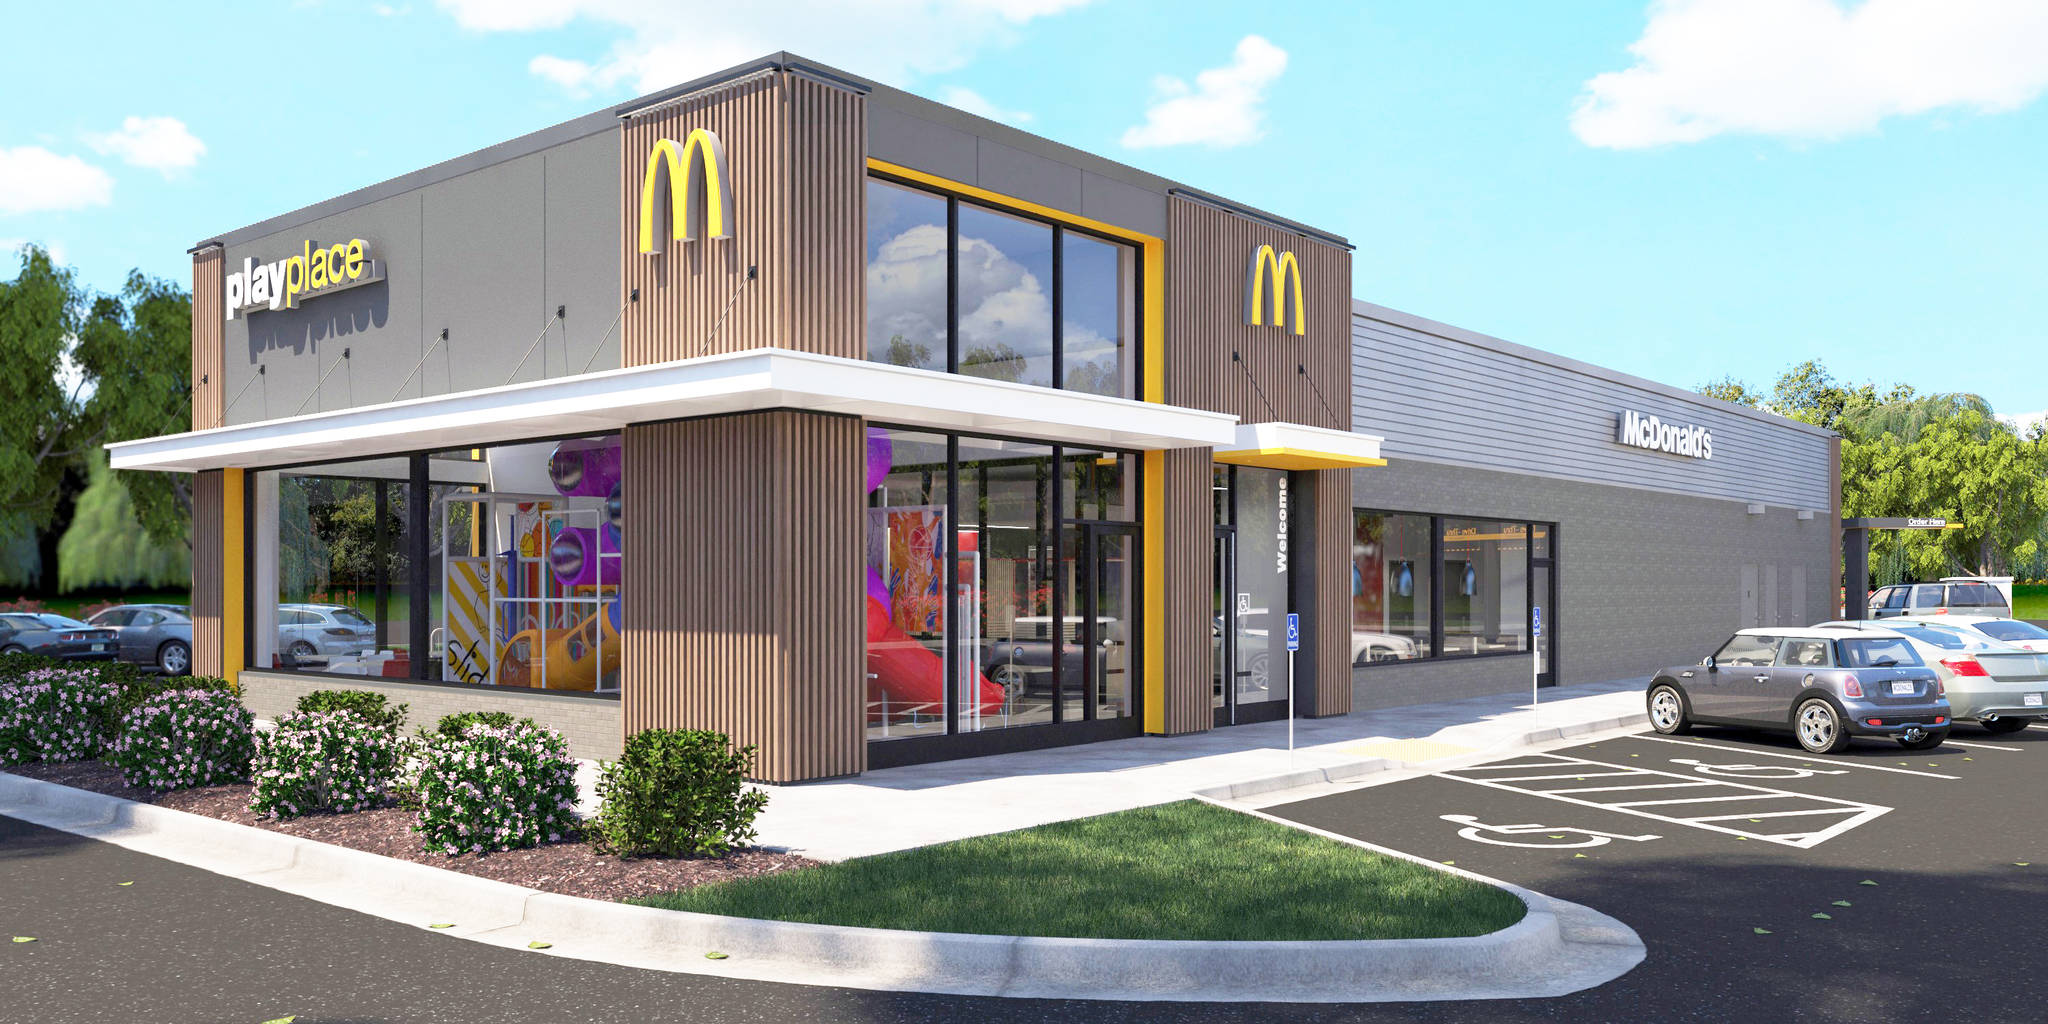 New McDonald's